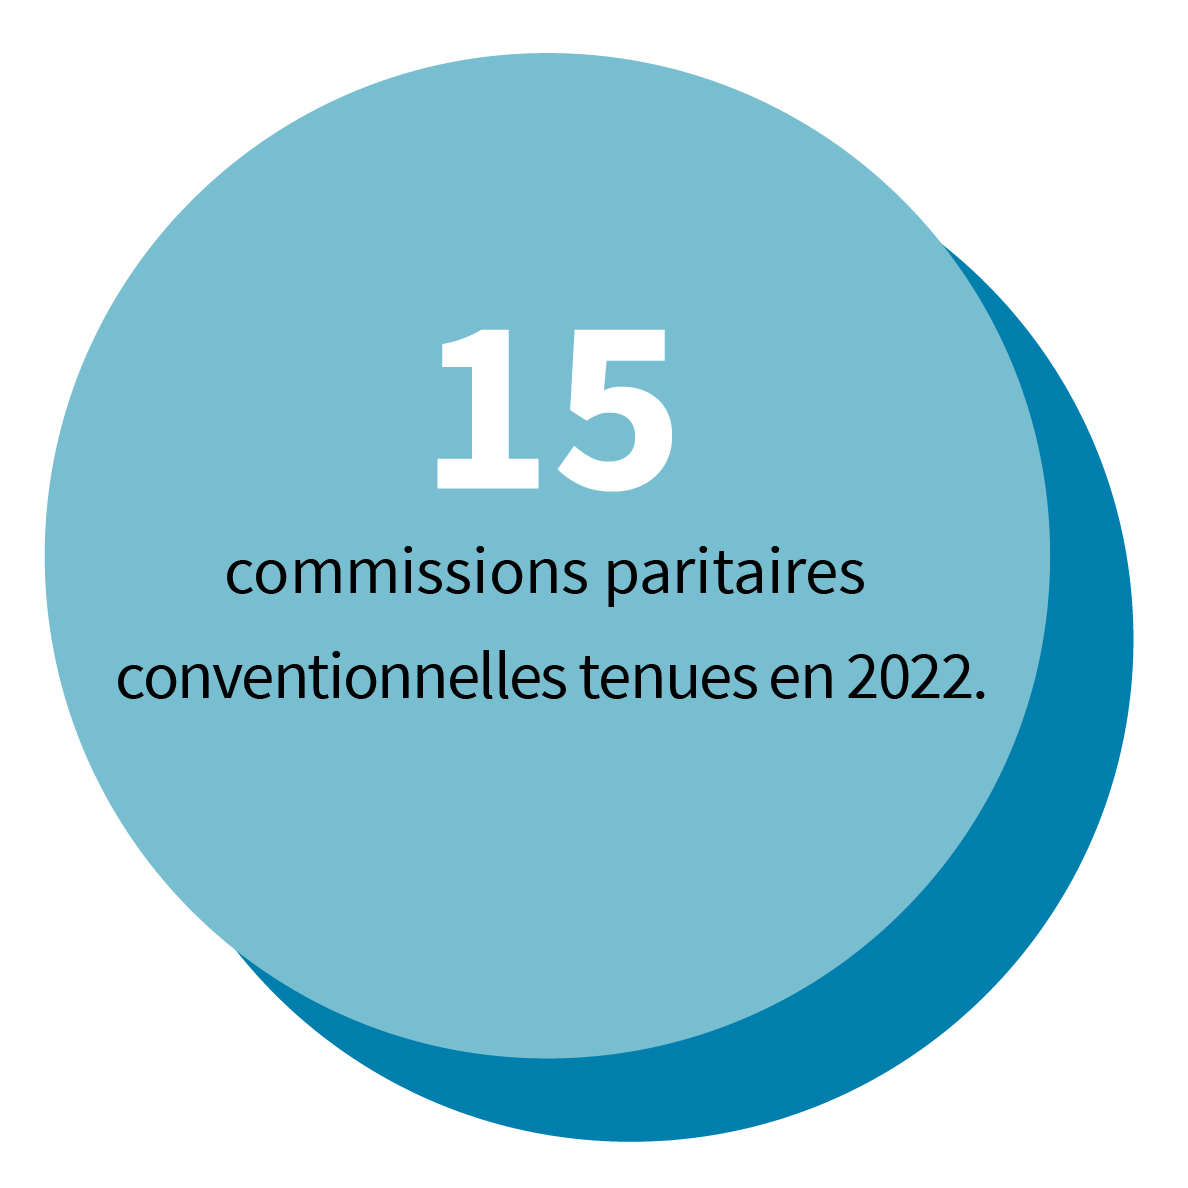 15 commissions paritaires conventionnelles tenues en 2022.